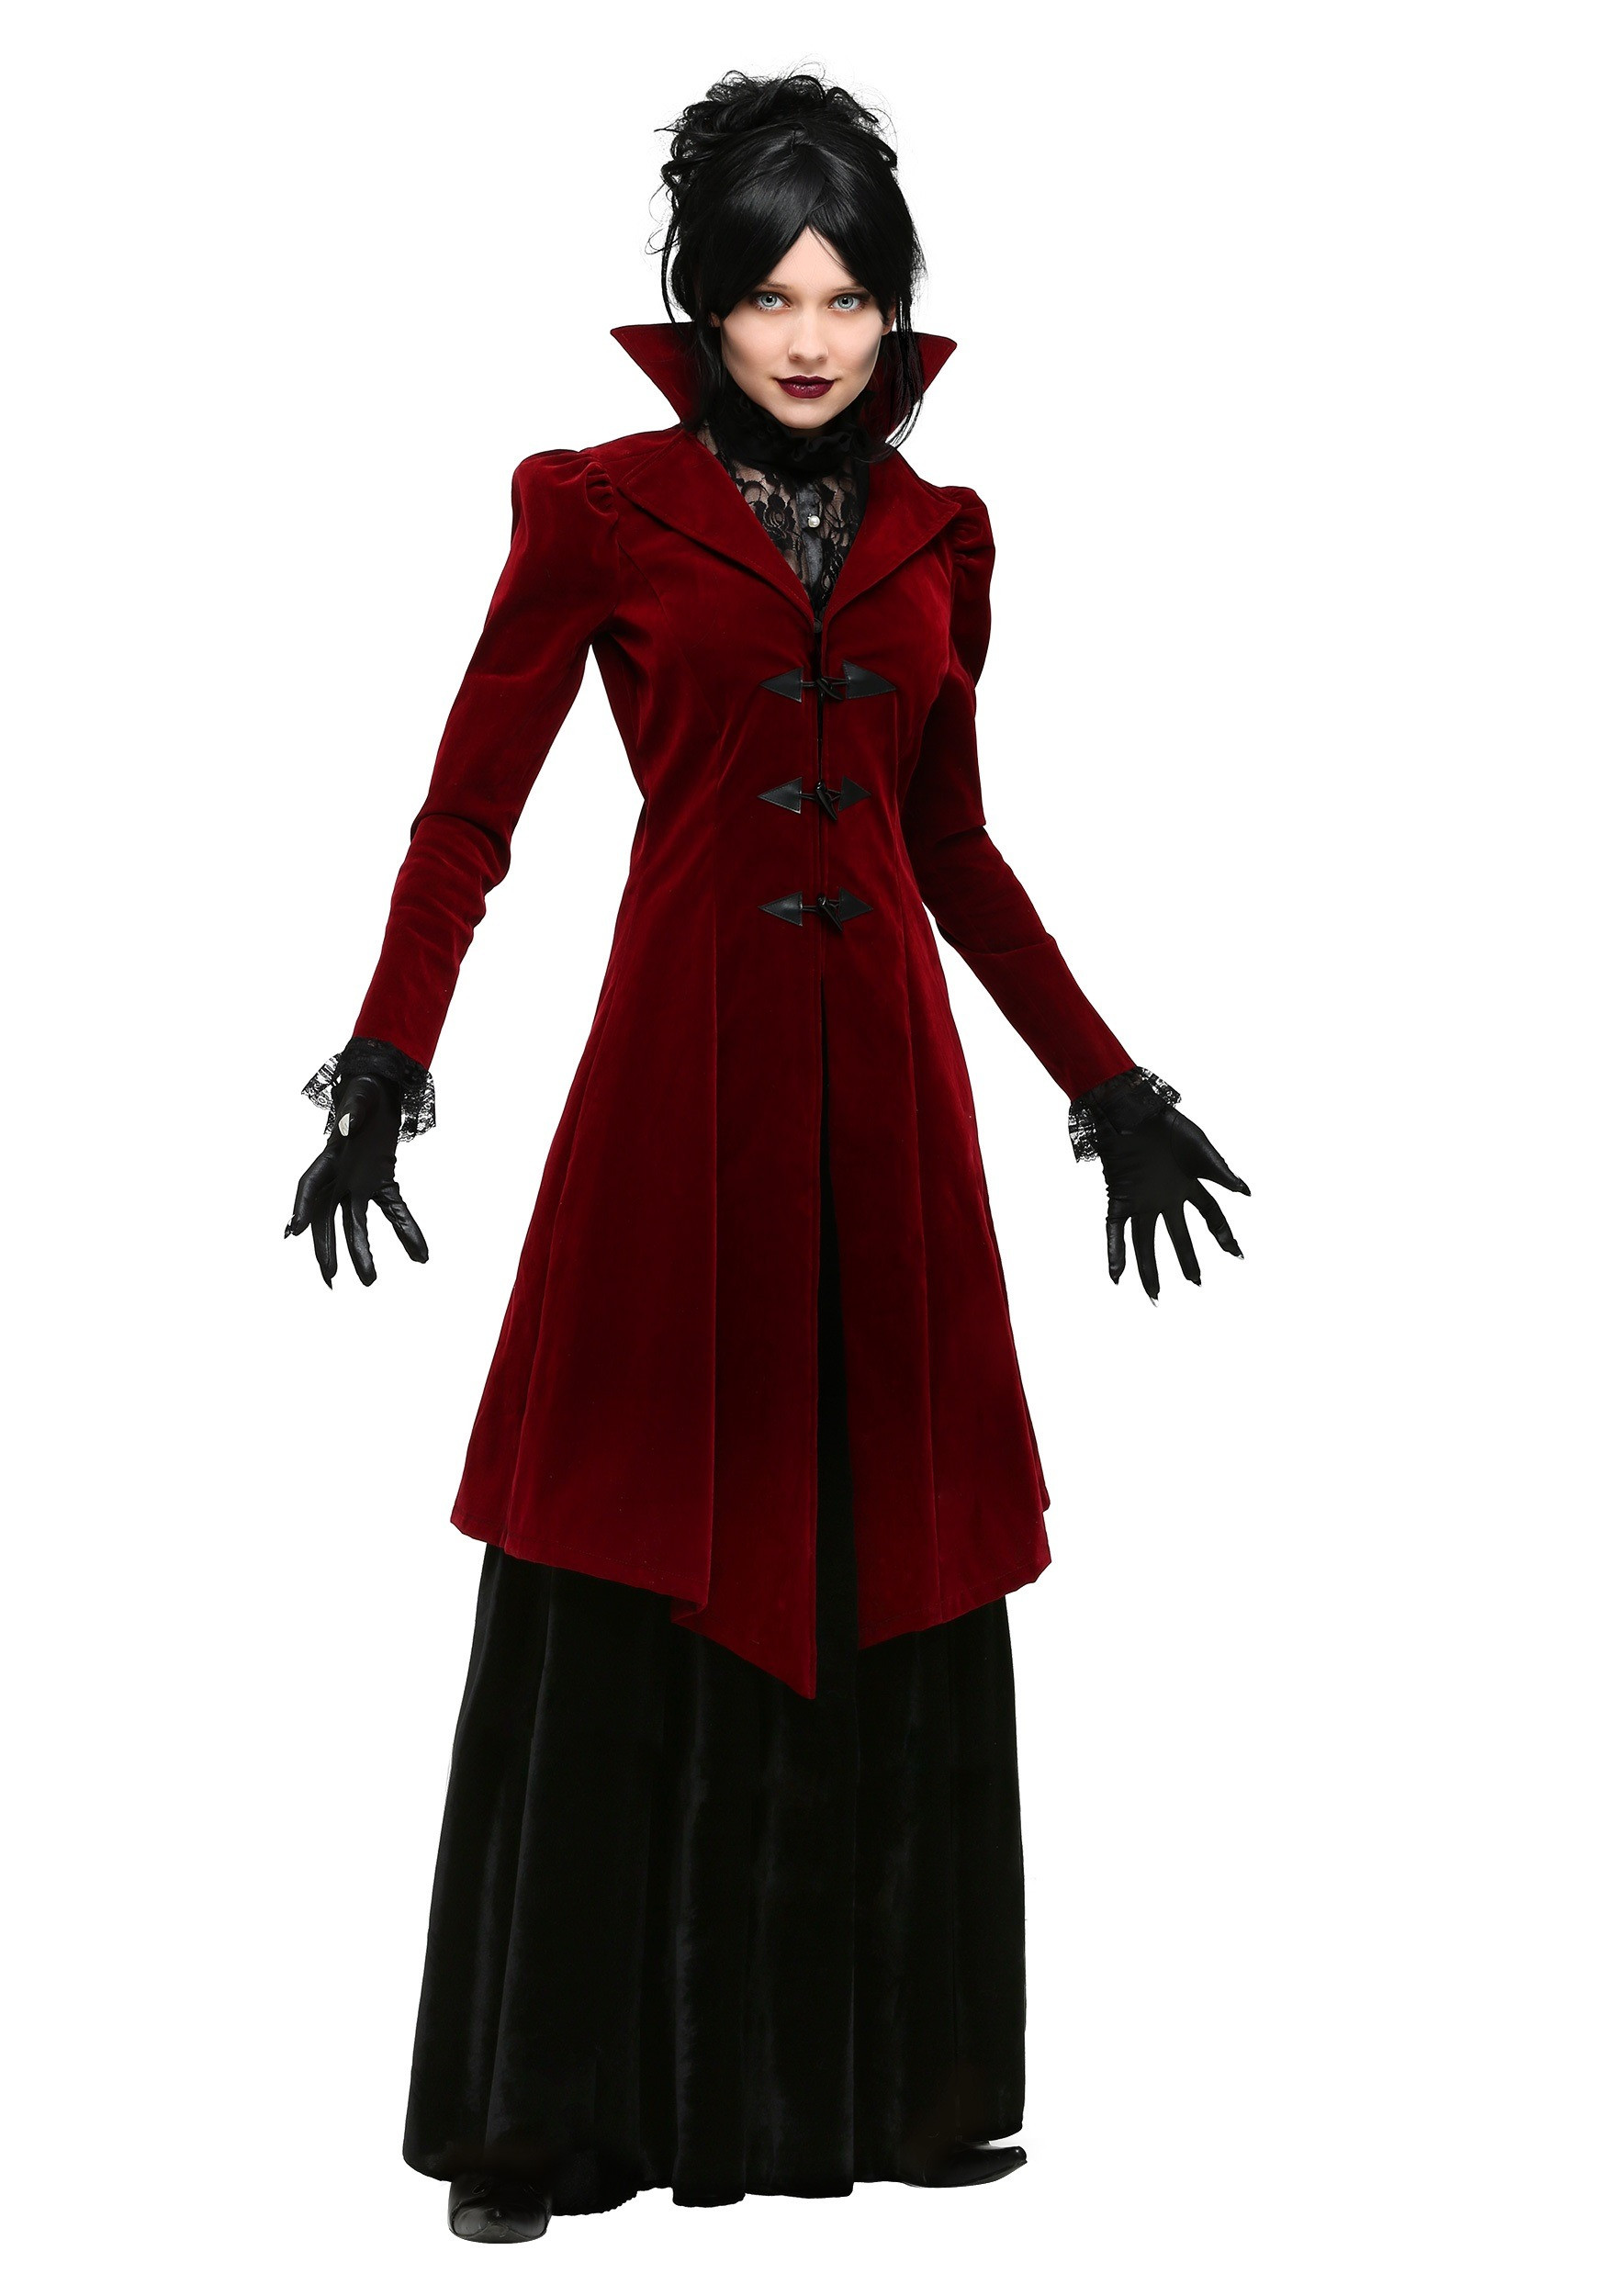 DIY Vampire Costume
 Plus Size Delightfully Dreadful Vampiress Costume for Women